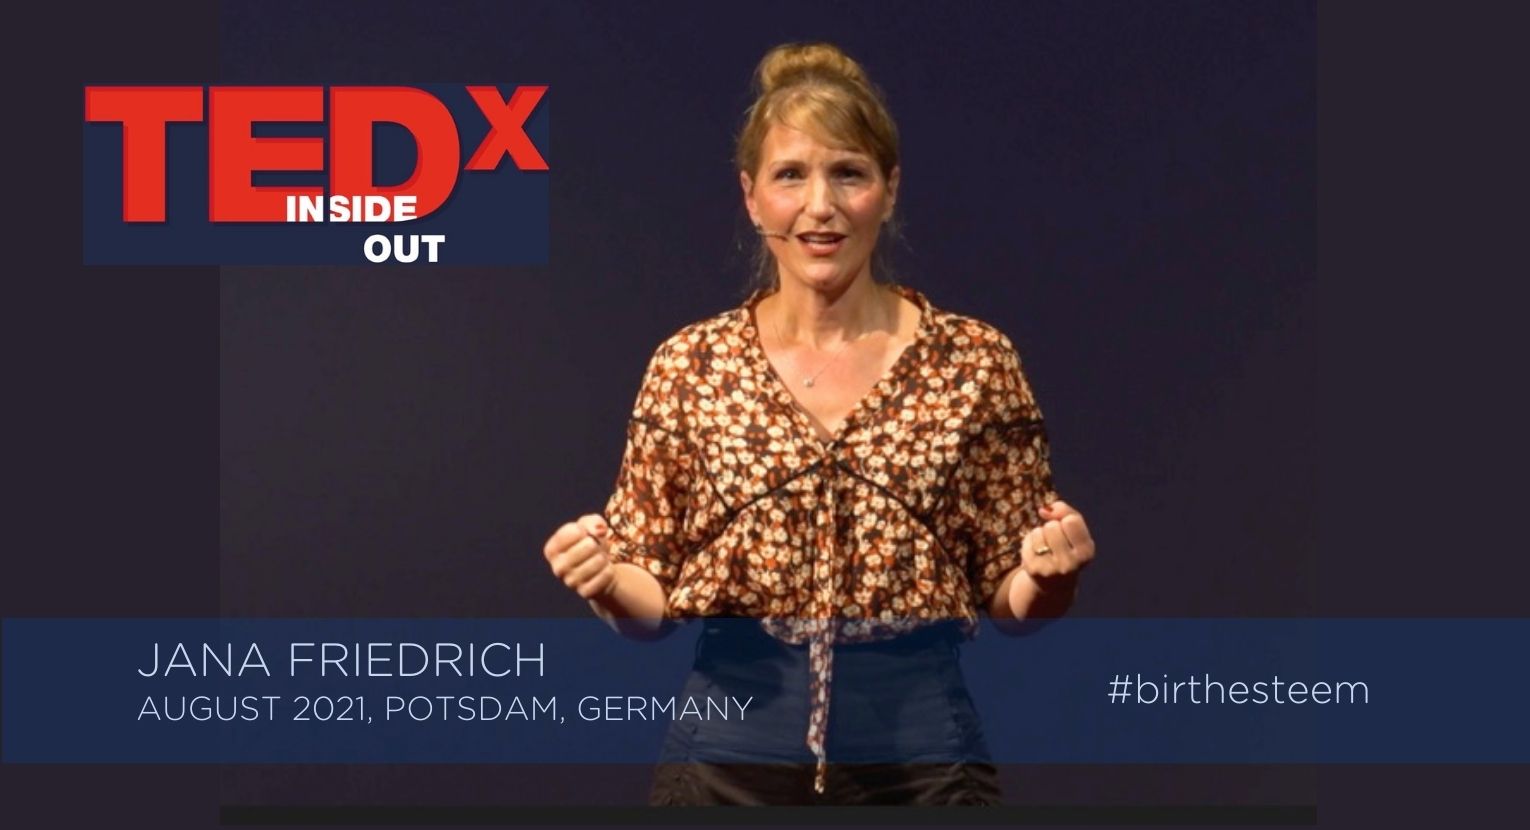 Tedx-Talk "Birth Esteem von Jana Friedrich